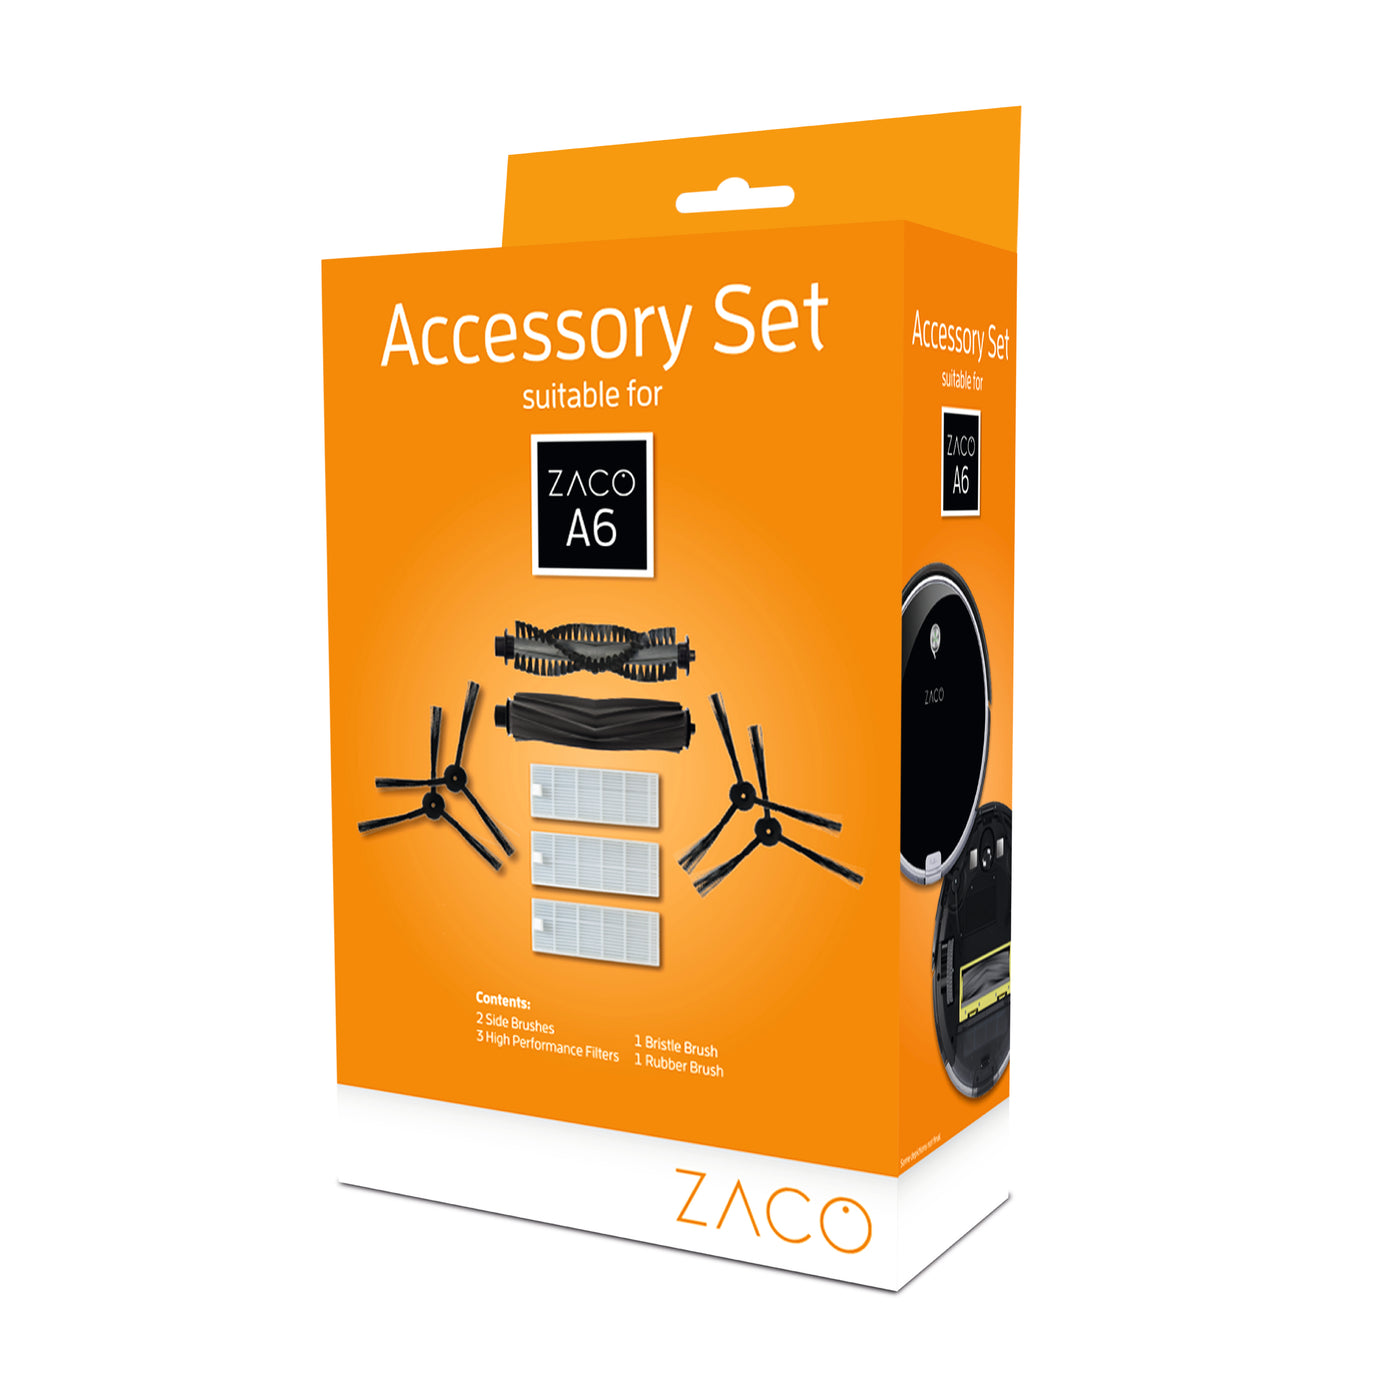 Accessory set for ZACO A6